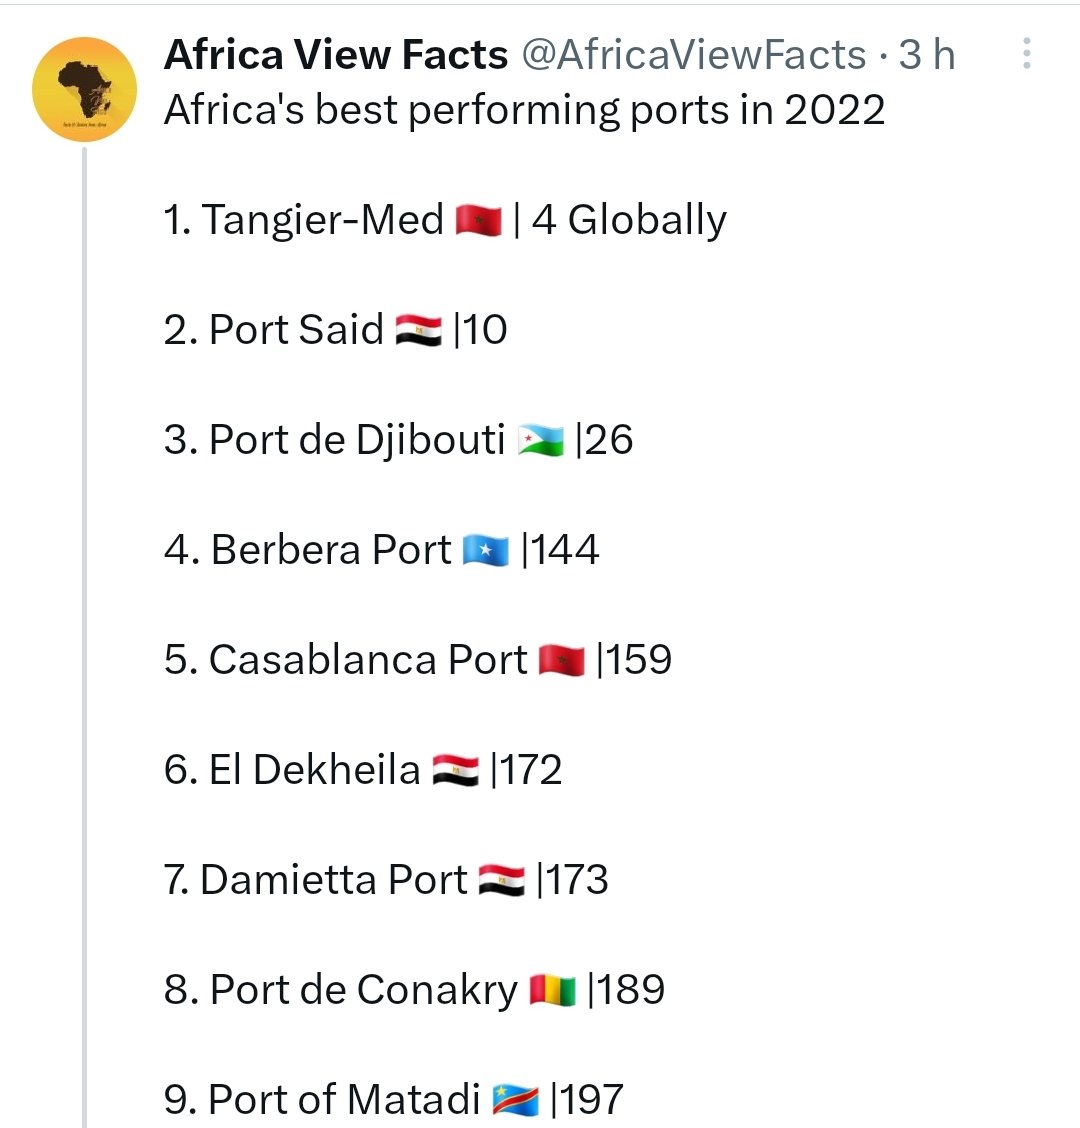 @Asbachirb Je vois 2 ports marocains 🇲🇦 dans le Africa's best performing ports en 2022.
1er Tanger Med.🇲🇦
5ème Casablanca Port.🇲🇦
Je ne vois AUCUN port algérien 🇩🇿.